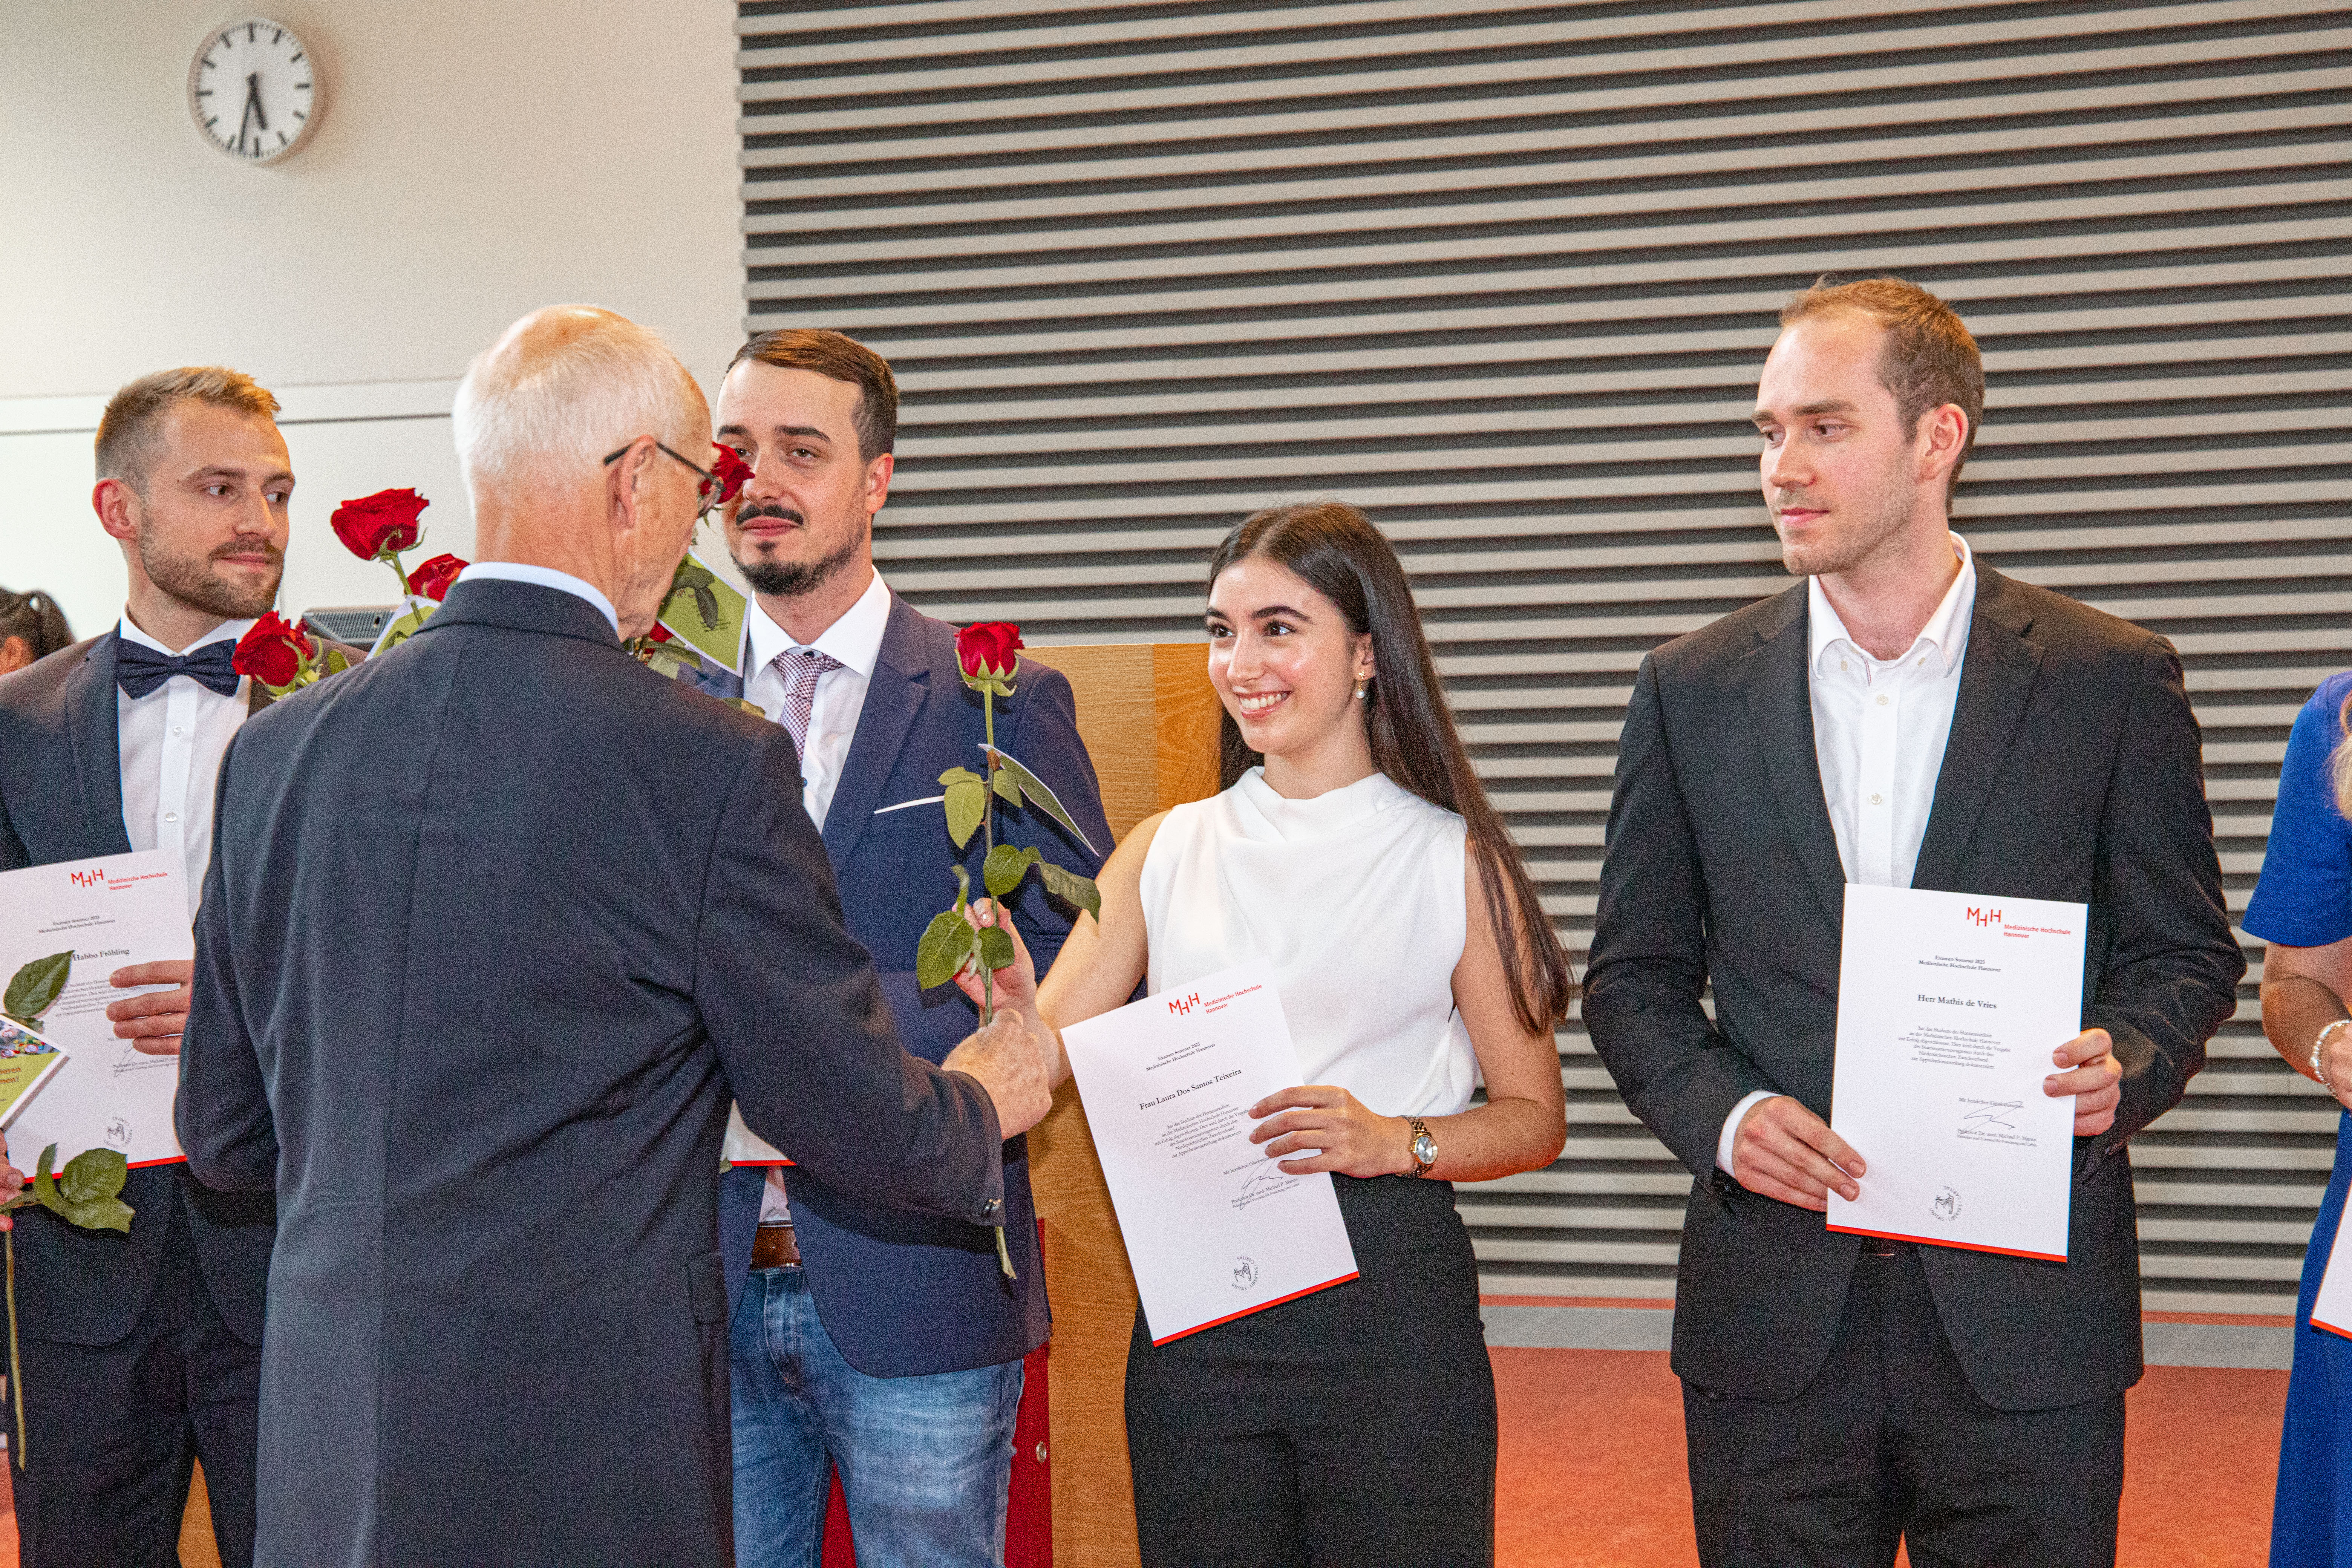 Alumni-Vorsitzender Prof. Dr. Piepenbrock übergibt eine rote Rose des Ehemaligenvereins an die Alumnis